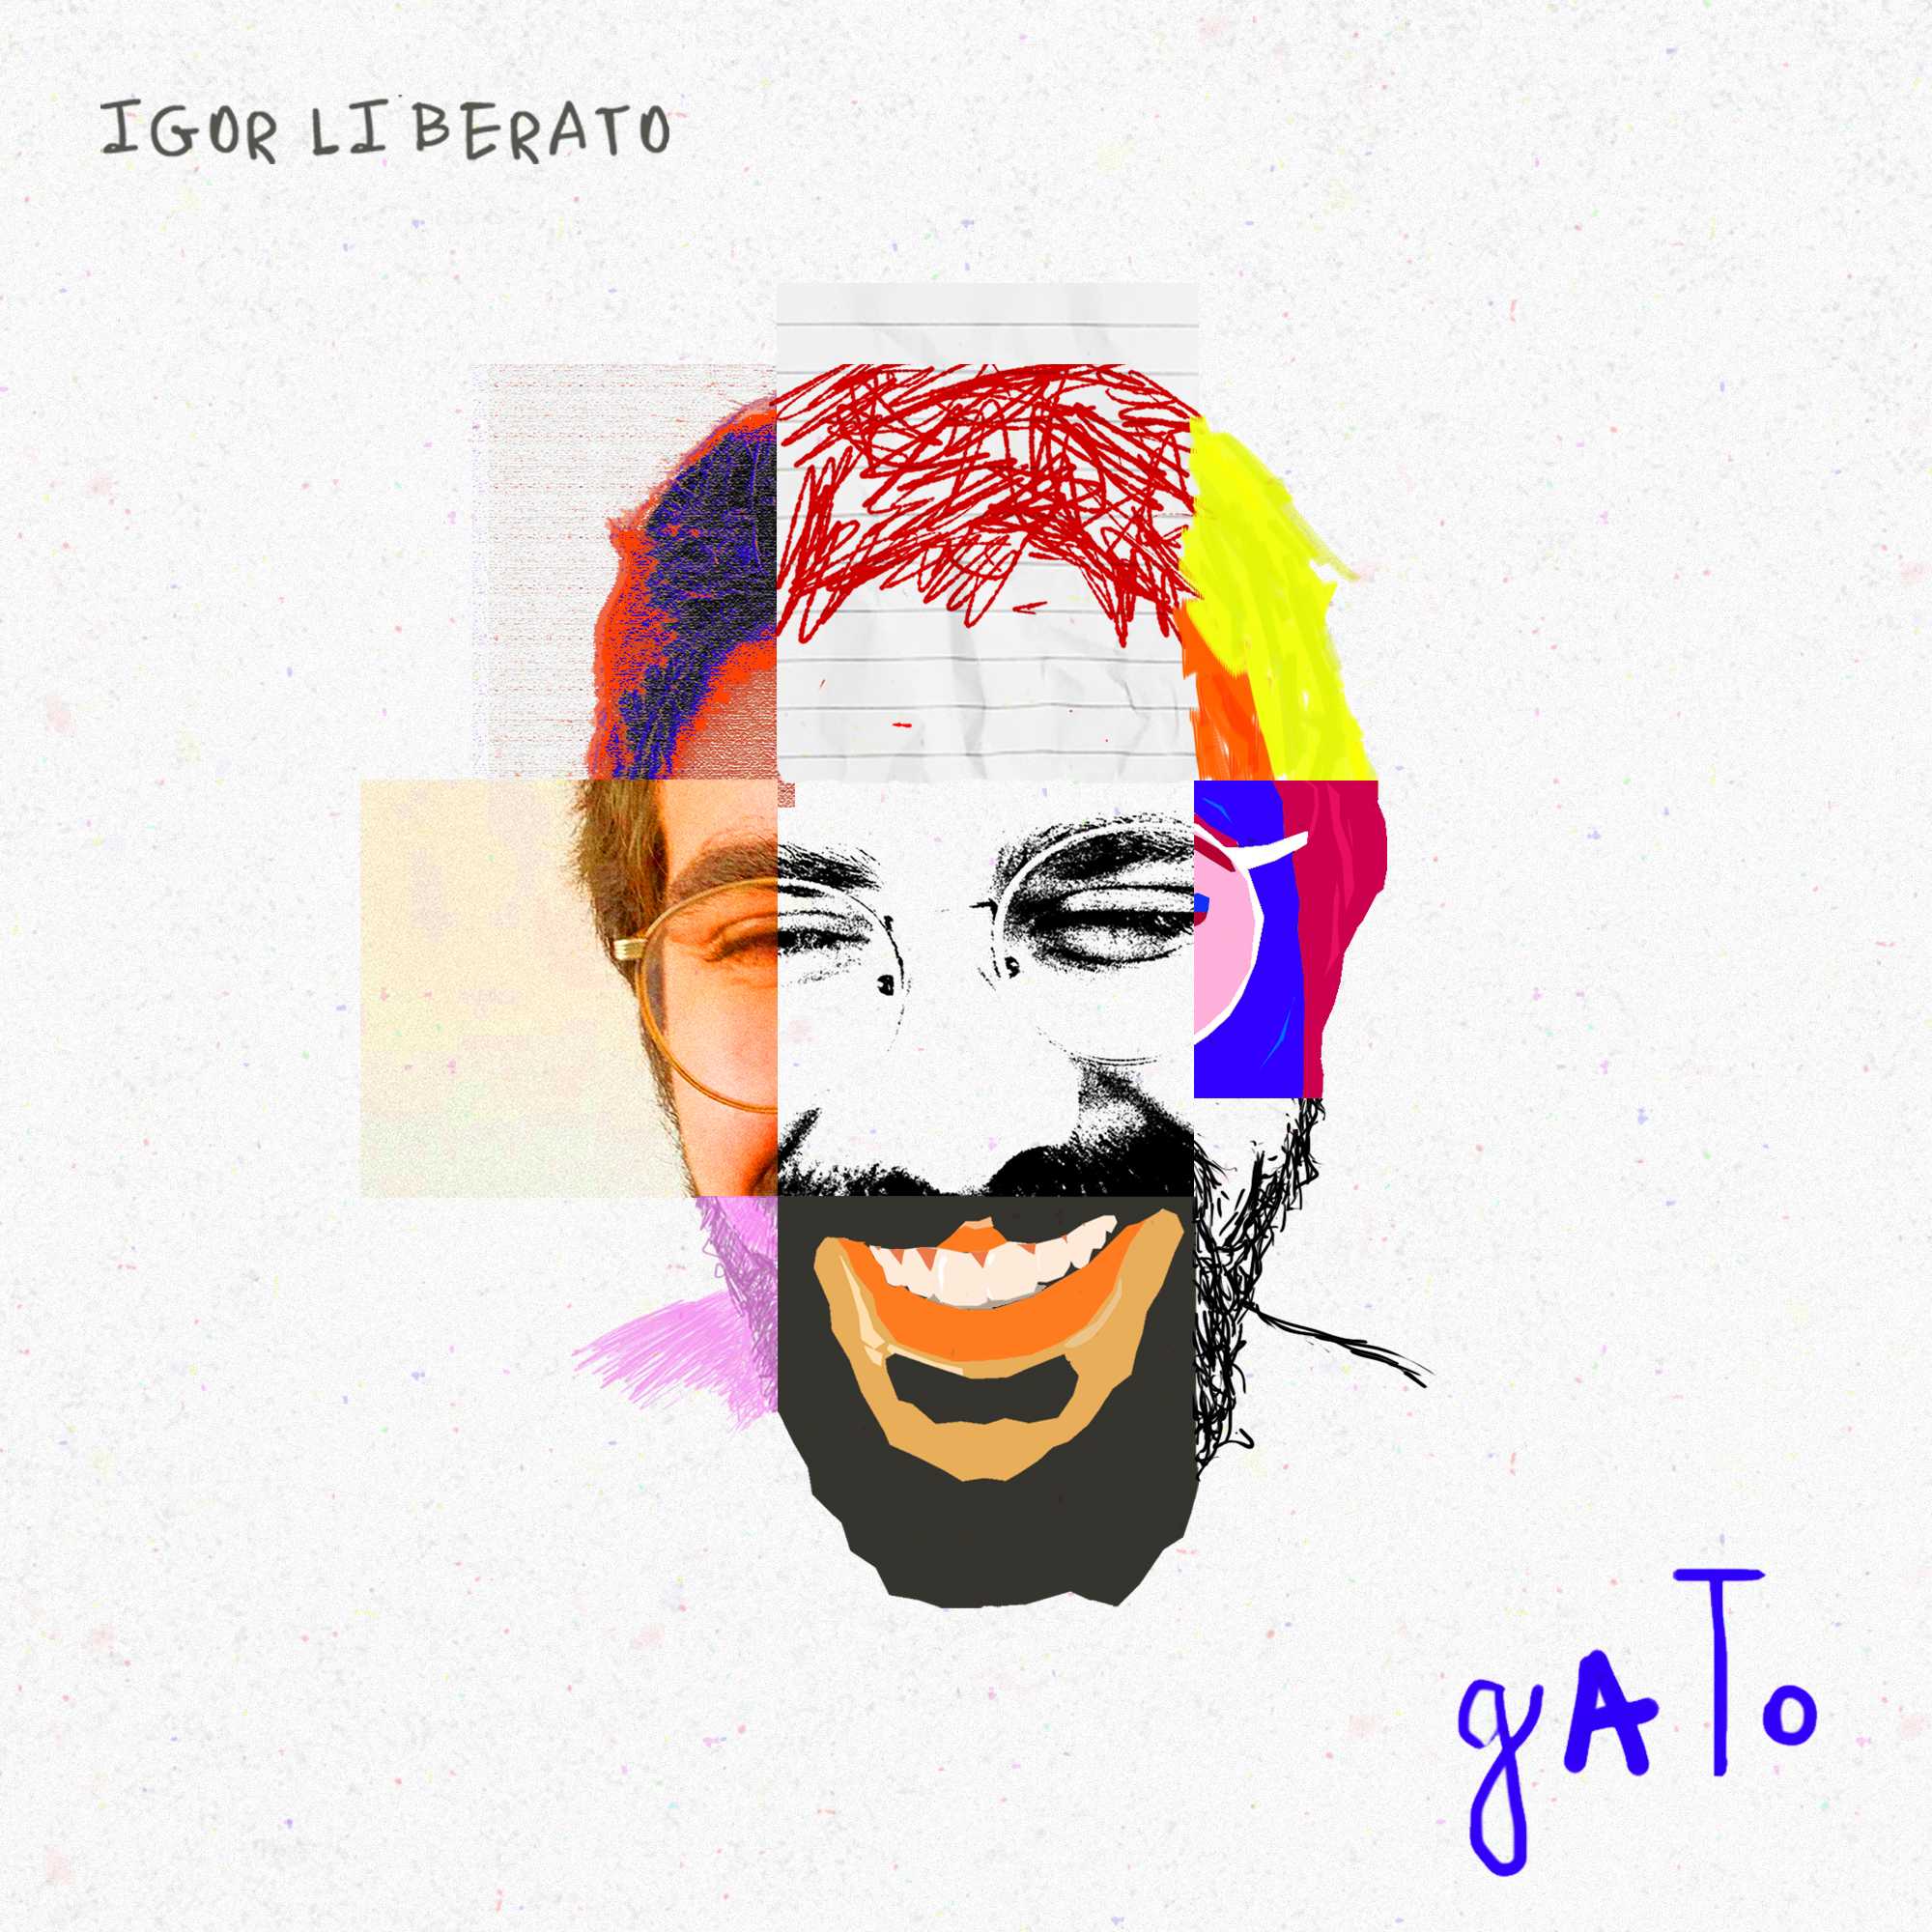 Igor Liberato | "Gato"